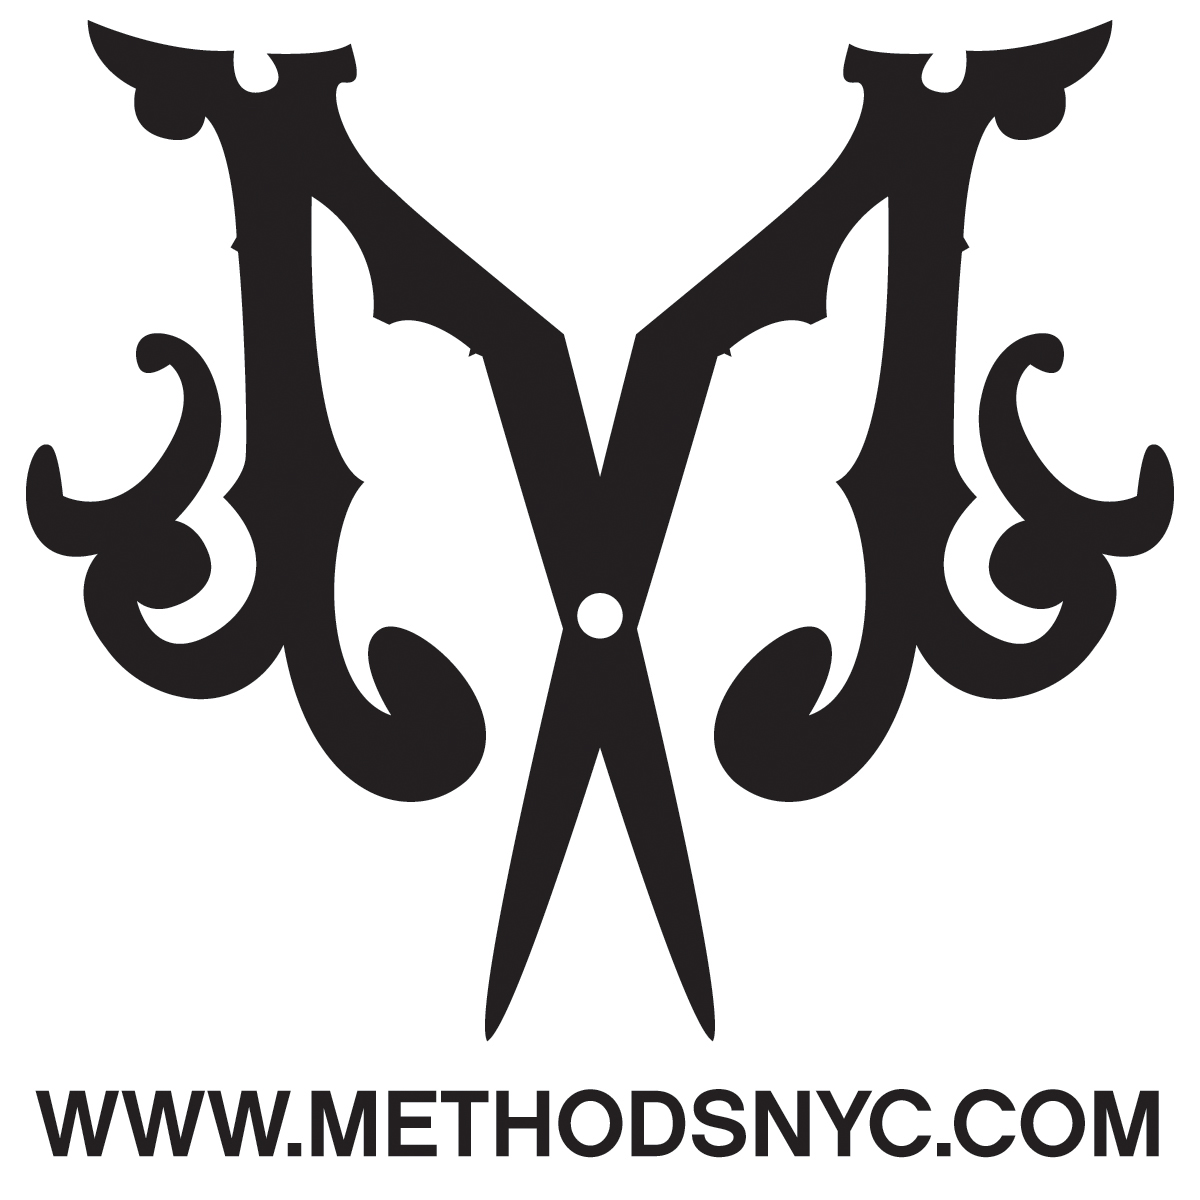 logo methods methodsnyc vandal vandalnyc dj vandal